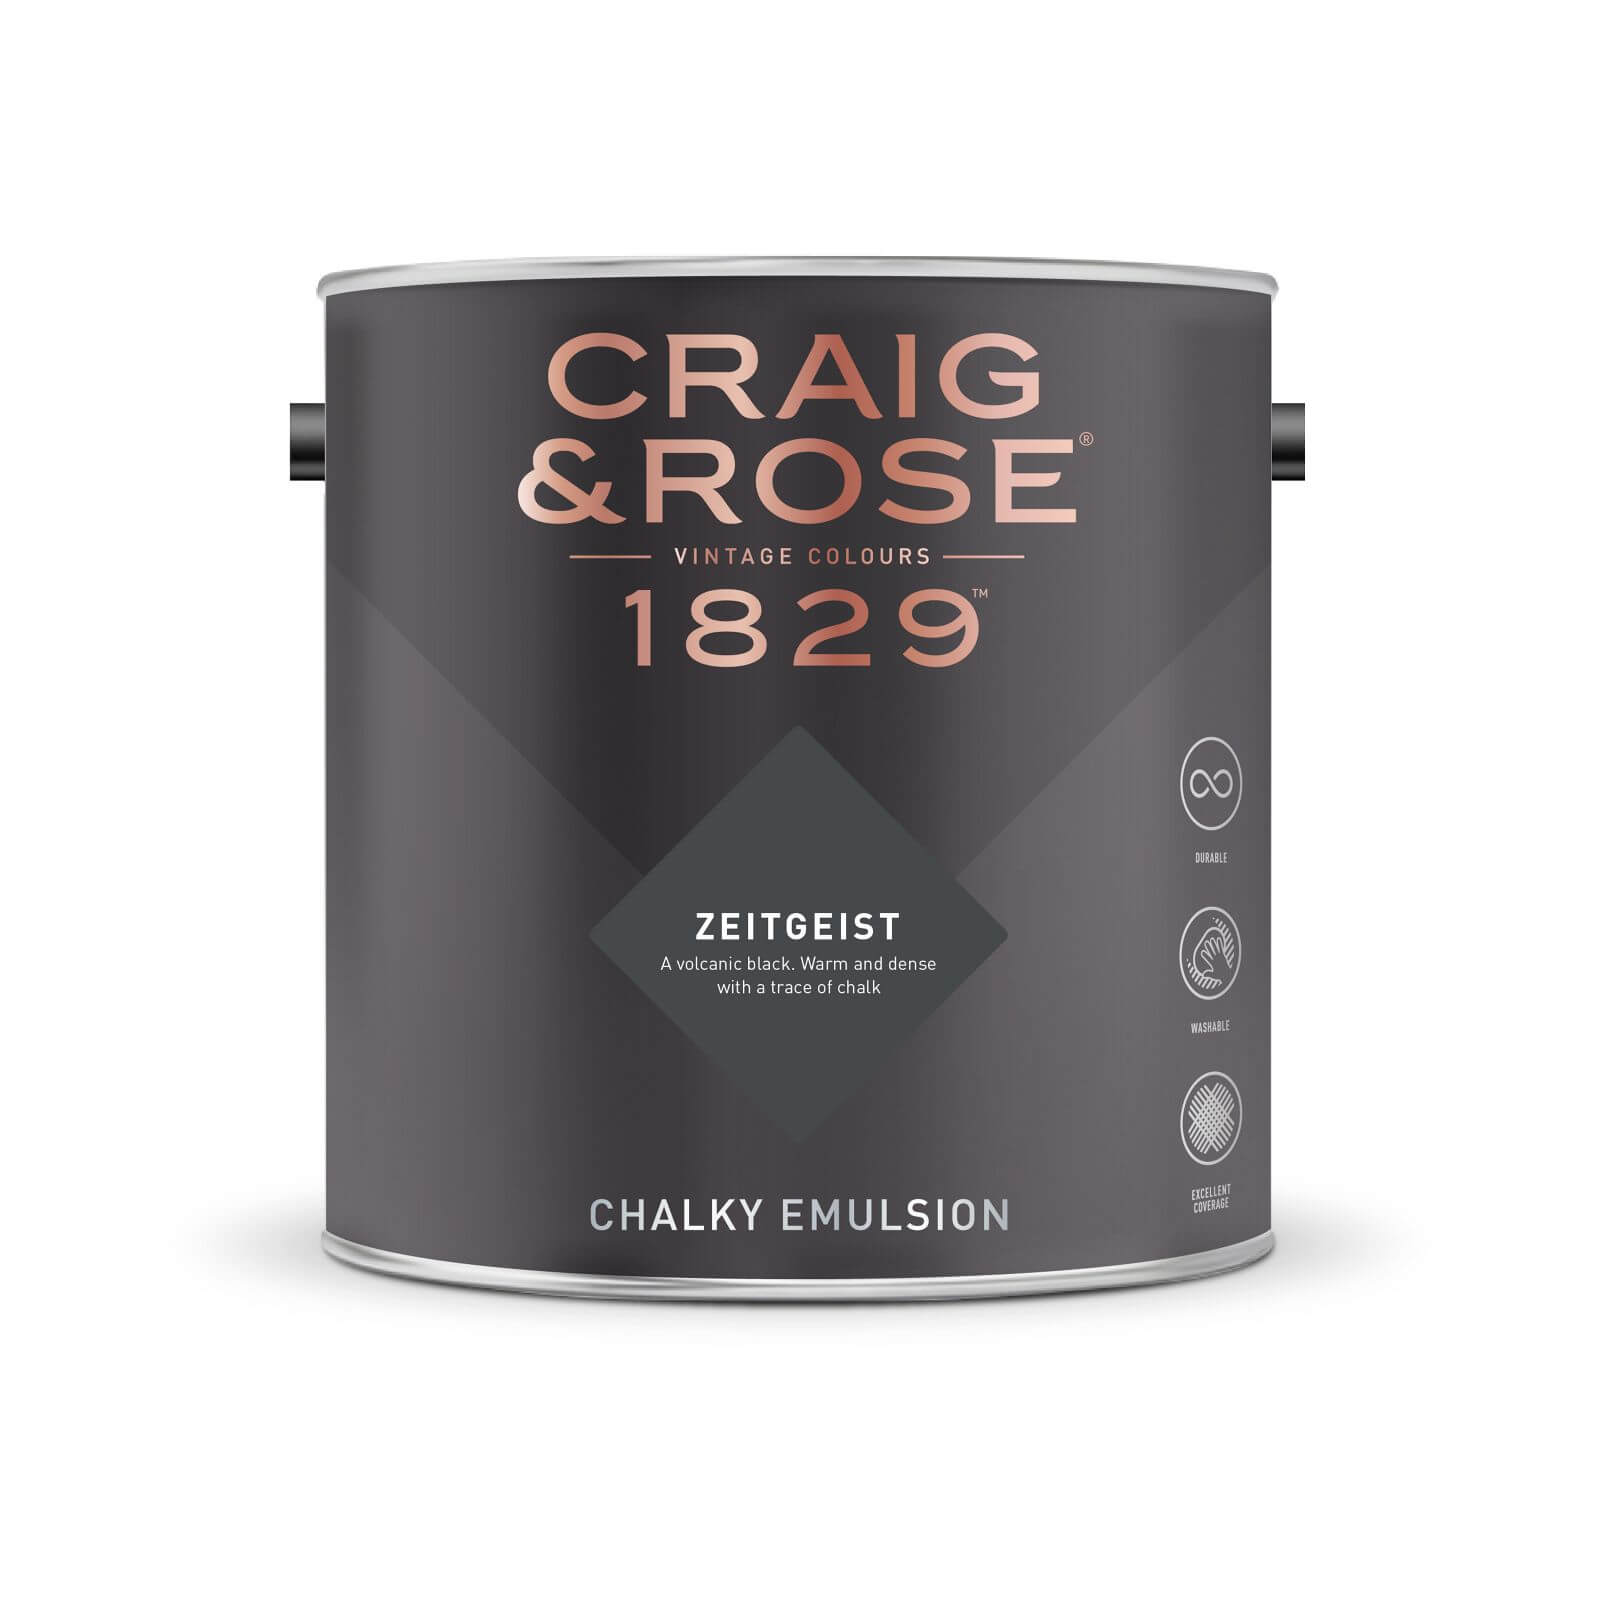 Craig & Rose 1829 Chalky Emulsion Paint Zeitgeist - Tester 50ml